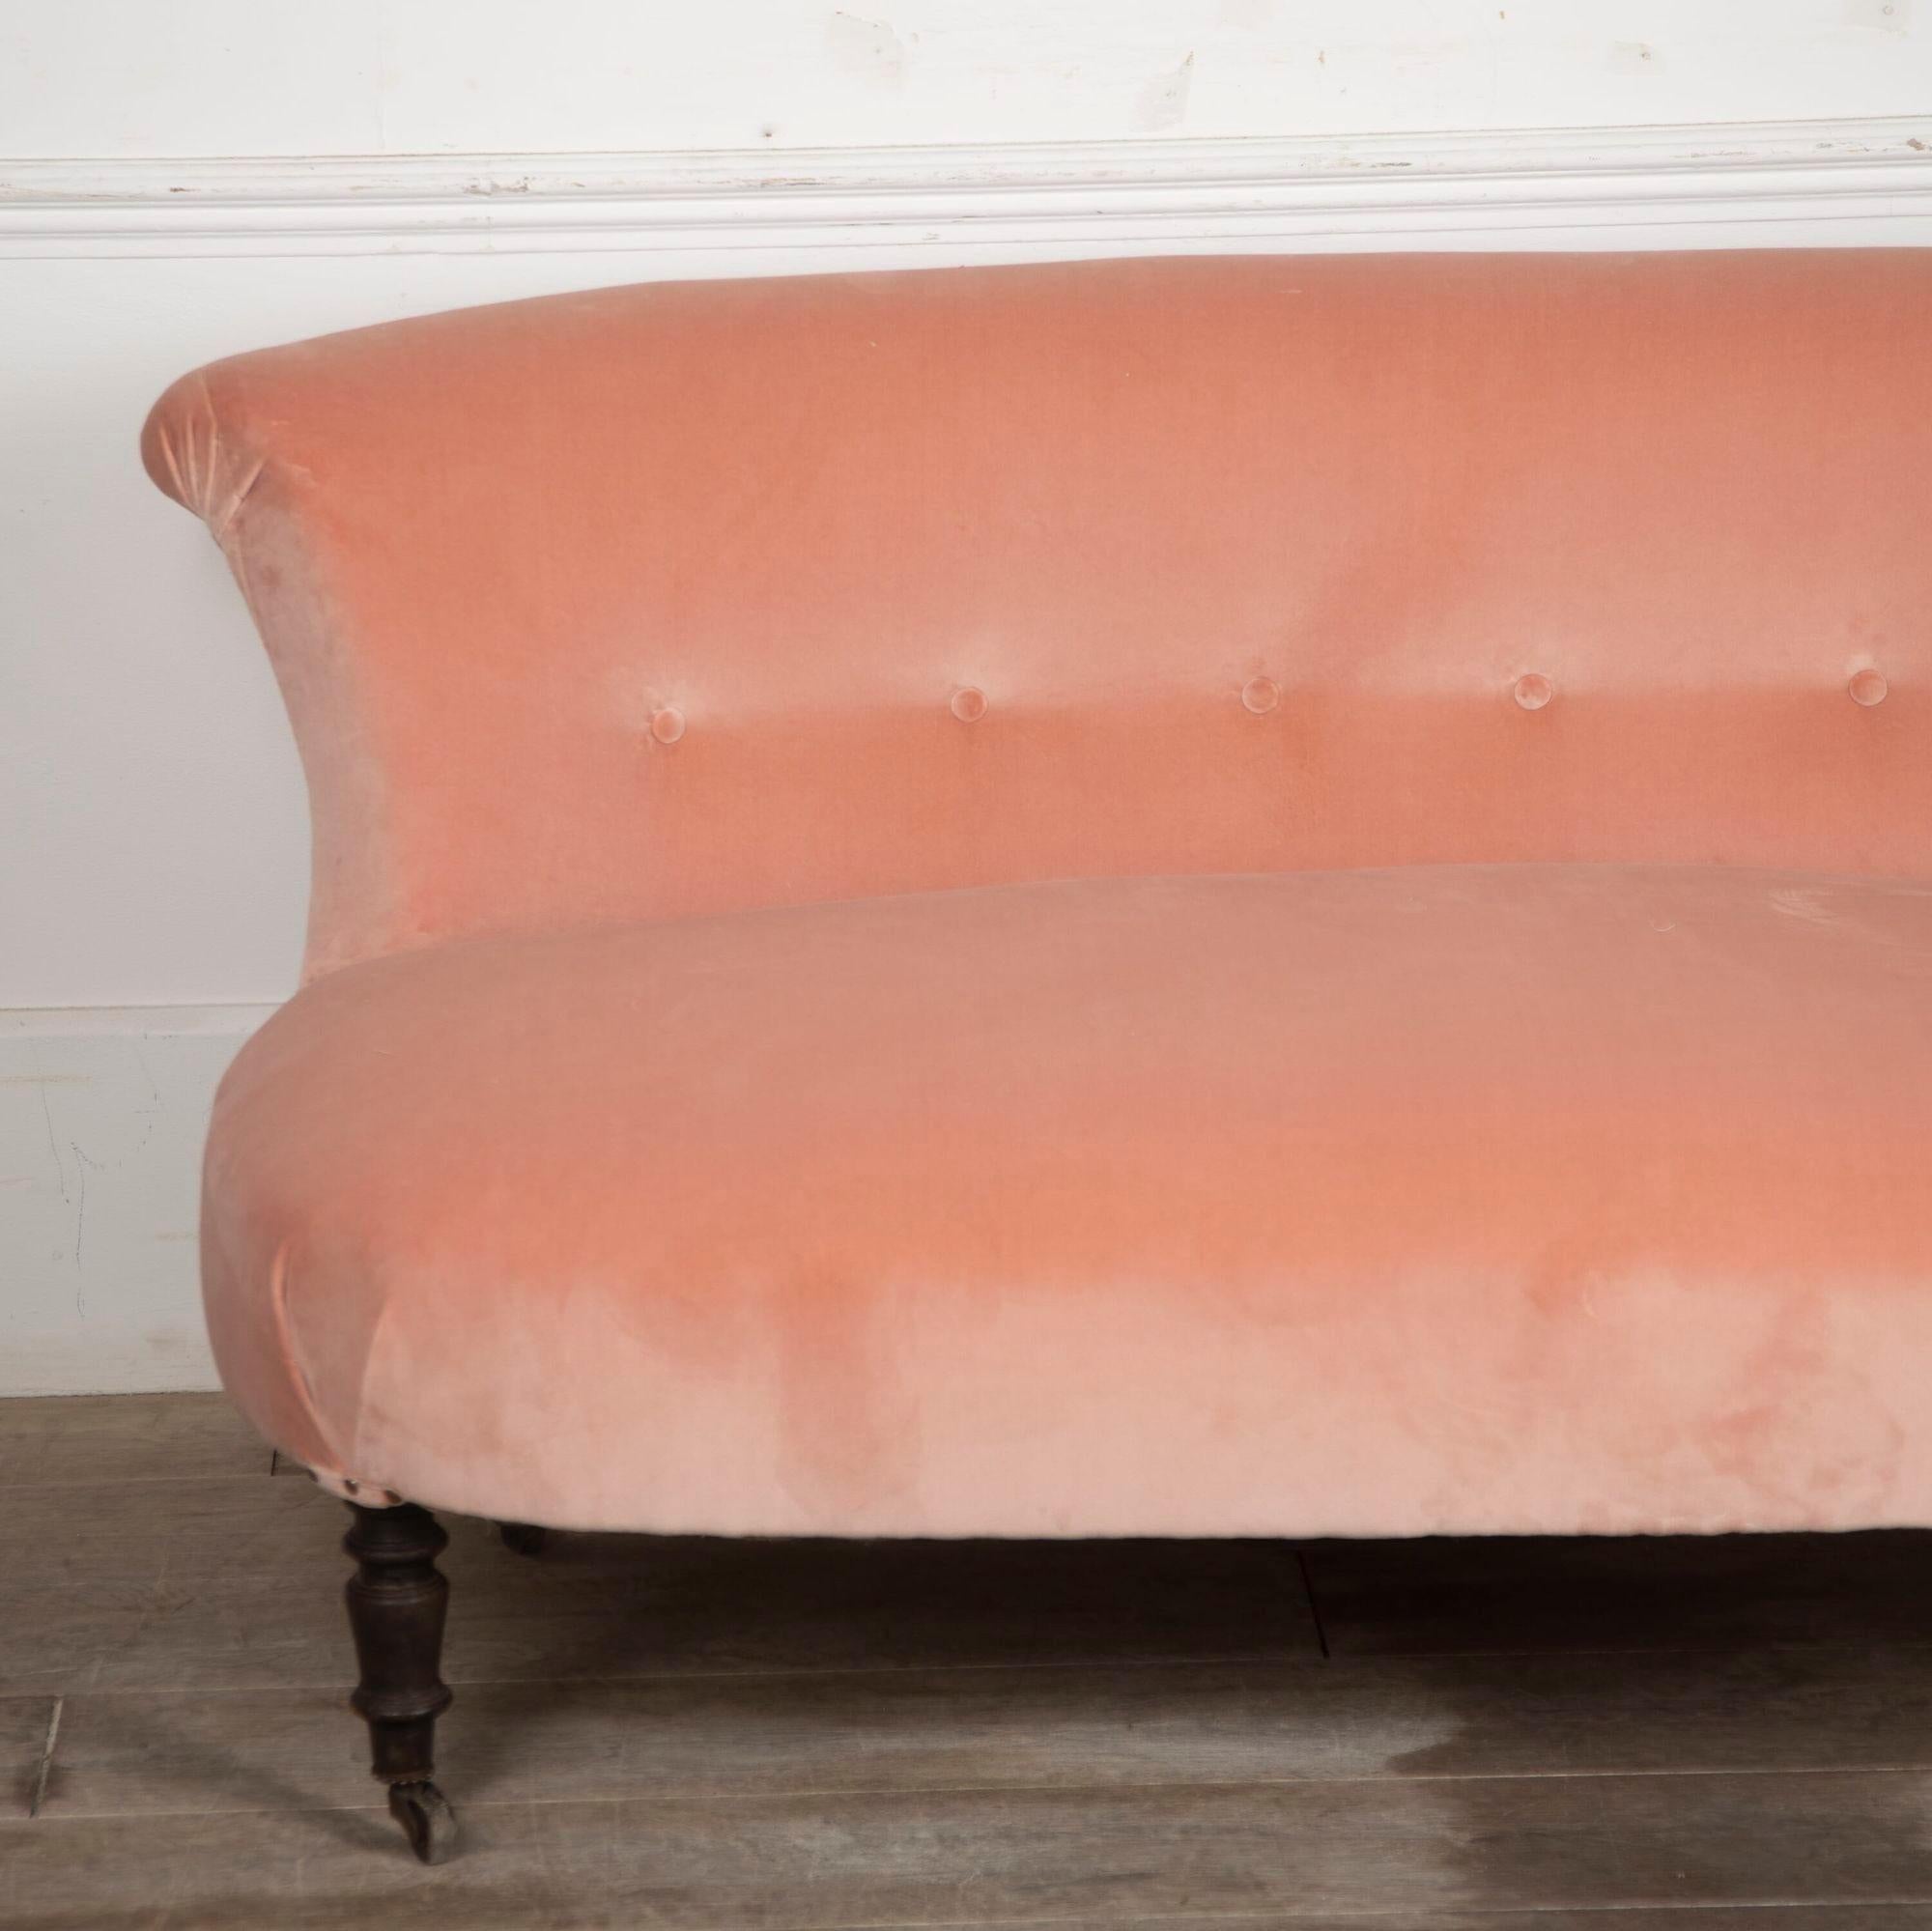 Chaise longue française du 19ème siècle recouverte de velours rose.
En bon état structurel pour son âge, avec un joli dos boutonné et un tissu contemporain. 
Parfait pour une chambre à coucher ou un petit coin.